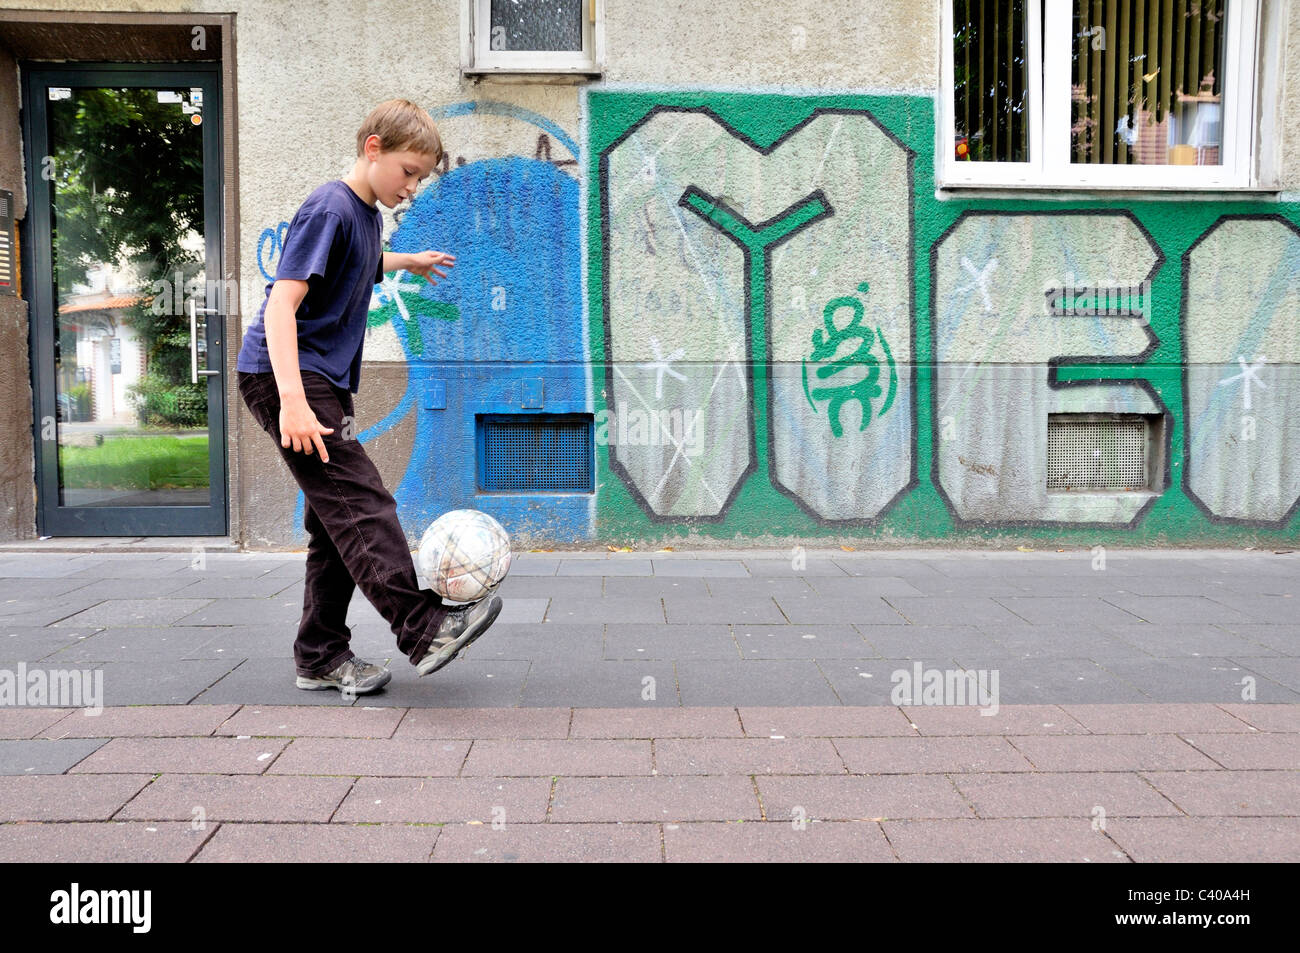 Germany, Europe, street football, football, soccer, boy, ball Stock Photo